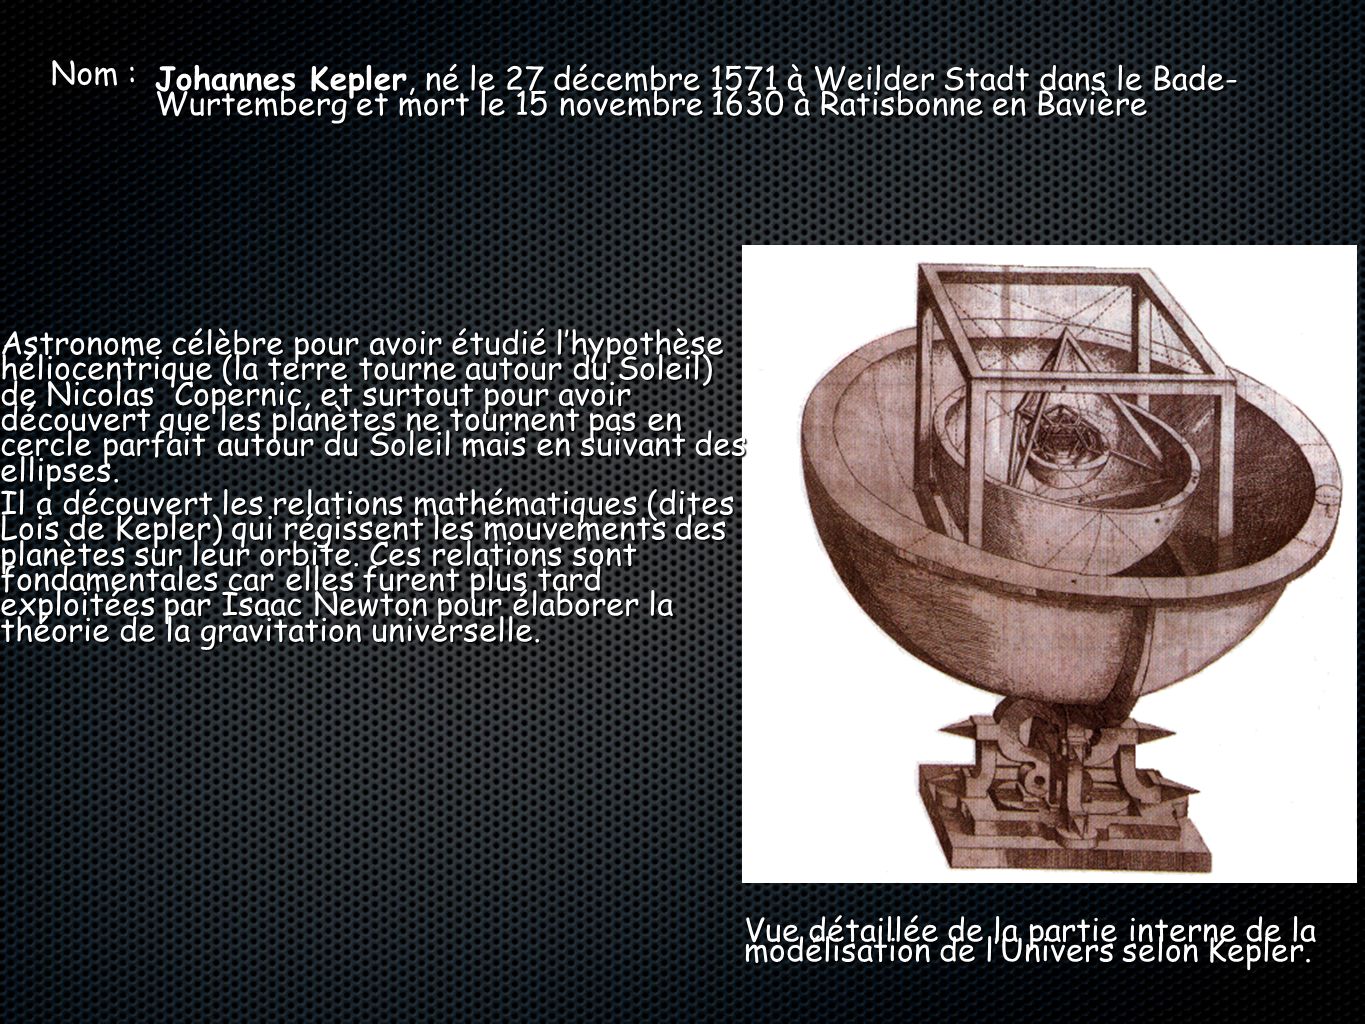 Nom : Johannes Kepler, né le 27 décembre 1571 à Weilder Stadt dans le Bade- Wurtemberg et mort le 15 novembre 1630 à Ratisbonne en Bavière.